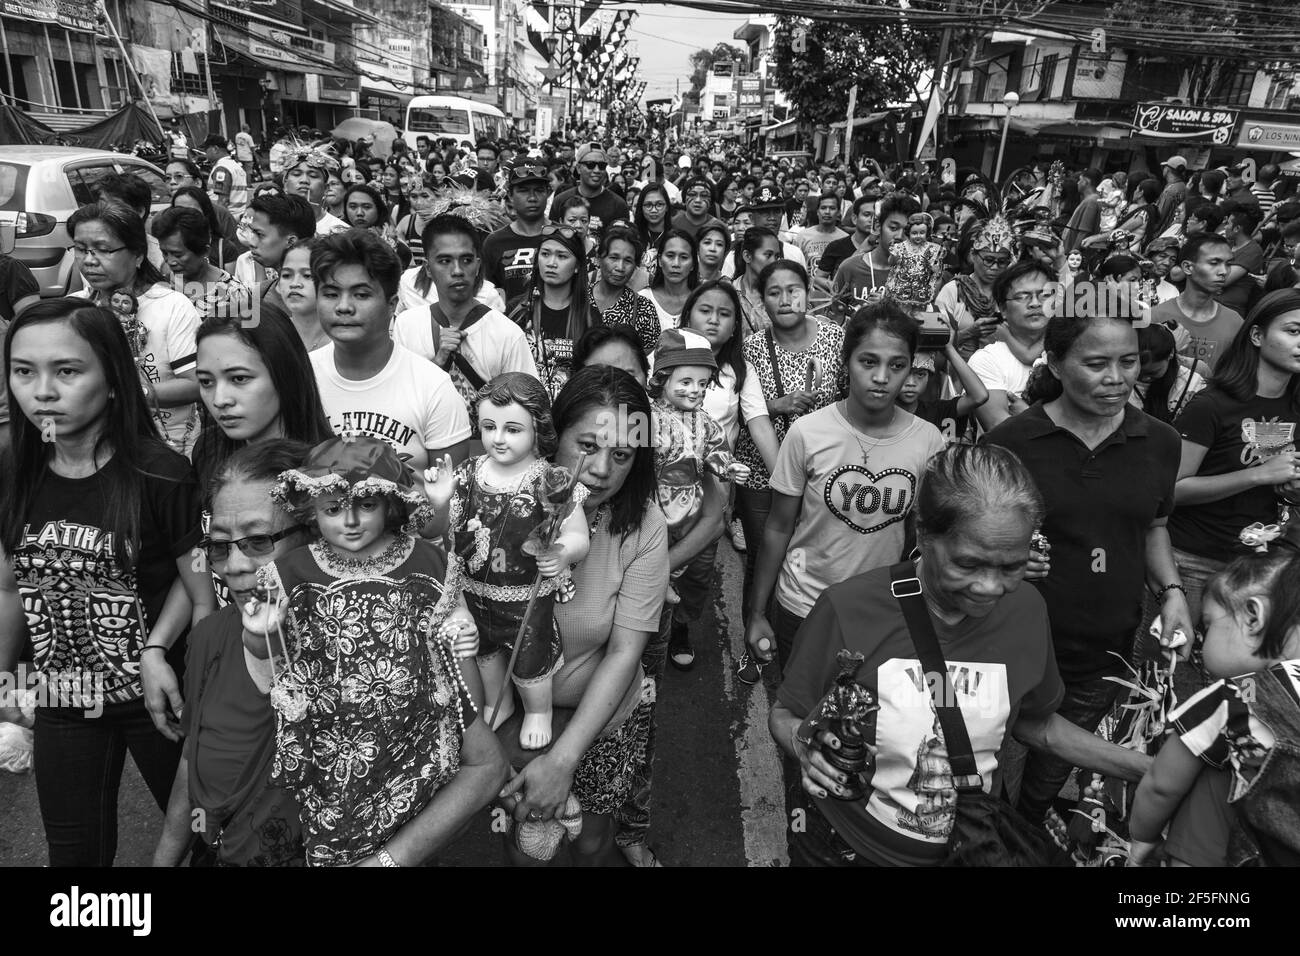 Die Hauptprozession, Filipinos Spazieren Durch Die Straßen Mit Statuen Von Santo Nino Während Des Ati-Atihan Festivals, Kalibo, Philippinen. Stockfoto